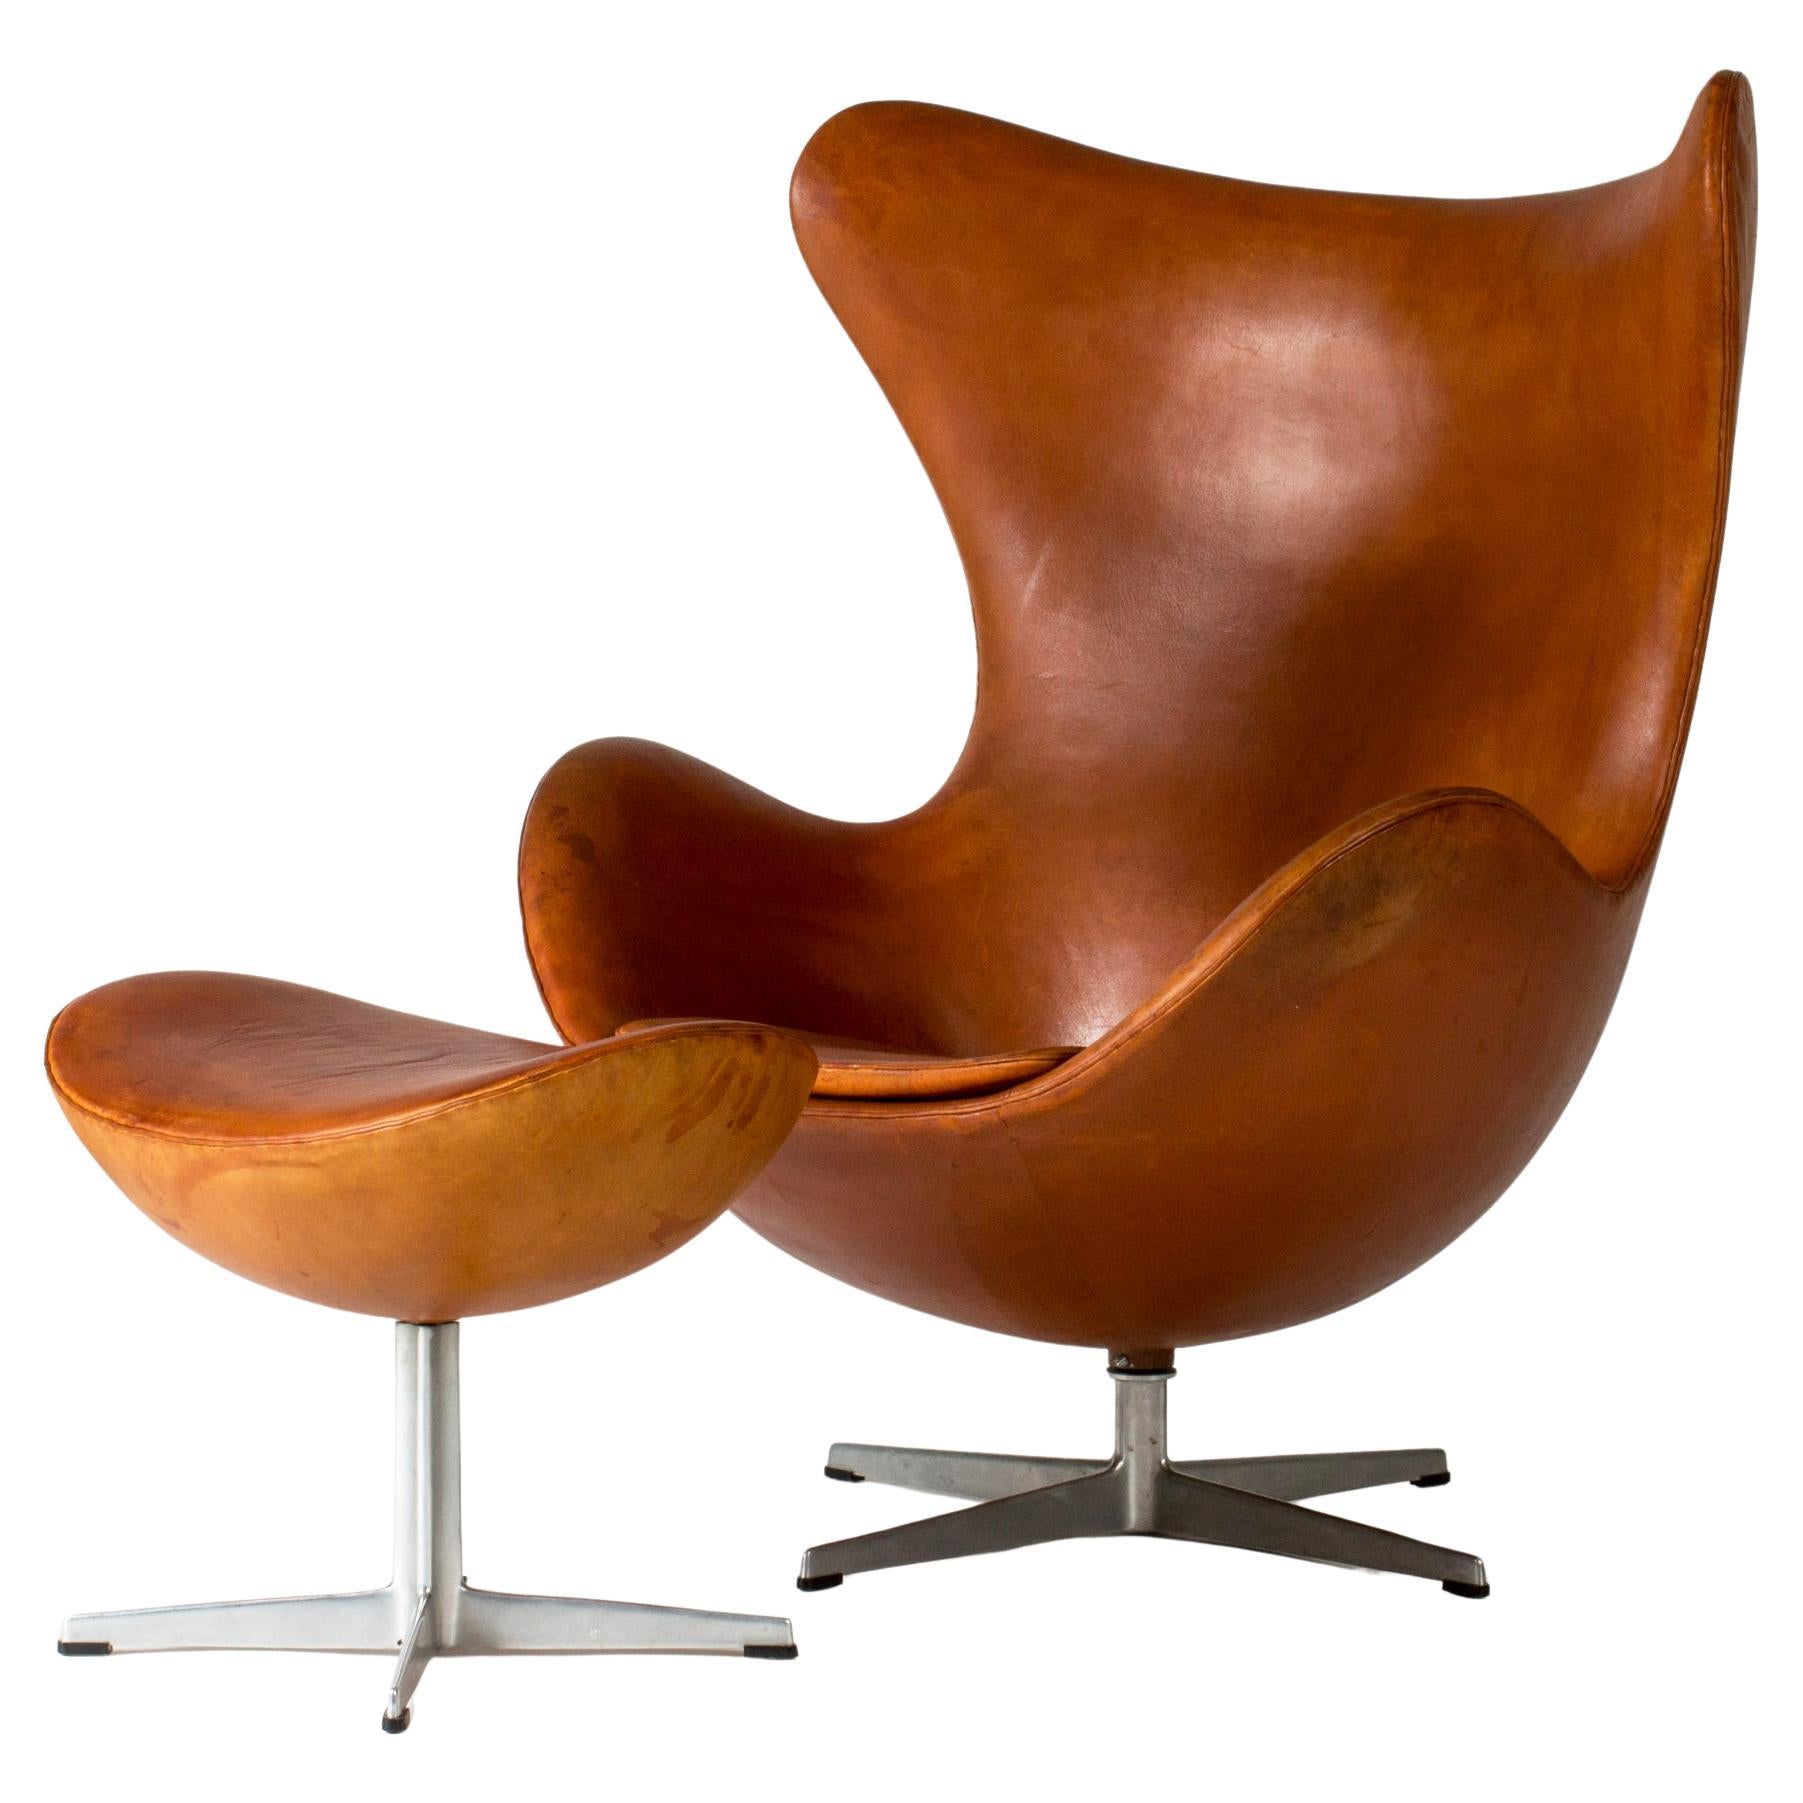 Chaise longue "Egg" et ottoman, Arne Jacobsen, Danemark, années 1950, The Moderns Modernity en vente